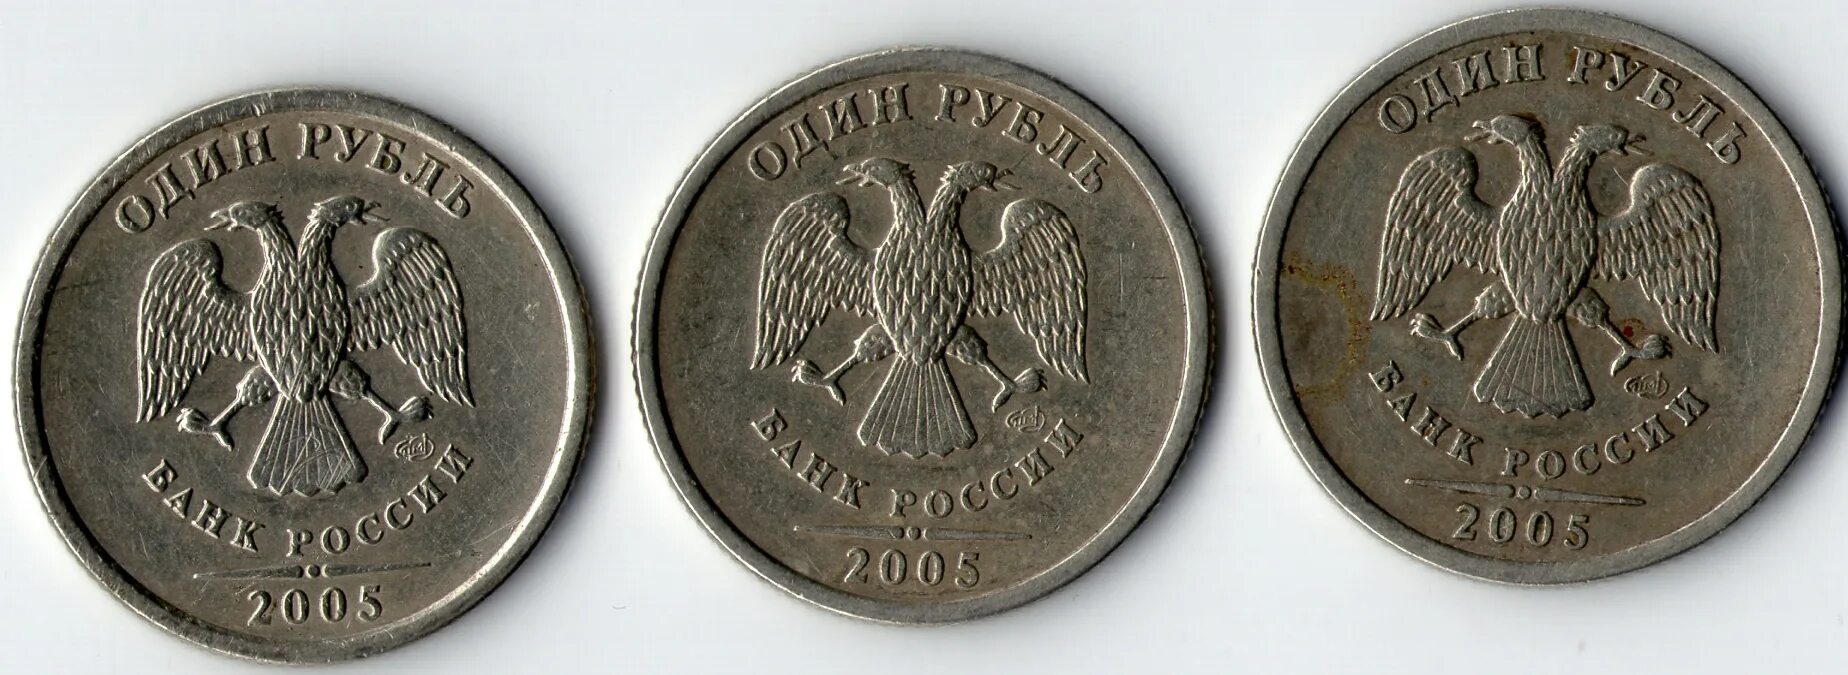 1 руб равно. Редкие монеты 1 рубль 2005 года СПМД. СПМД на монетах 1 рублей 2005. 1 Руб 2005 года Санкт-Петербургского монетного двора. Рубль 2005 года Санкт Петербургский монетный двор.